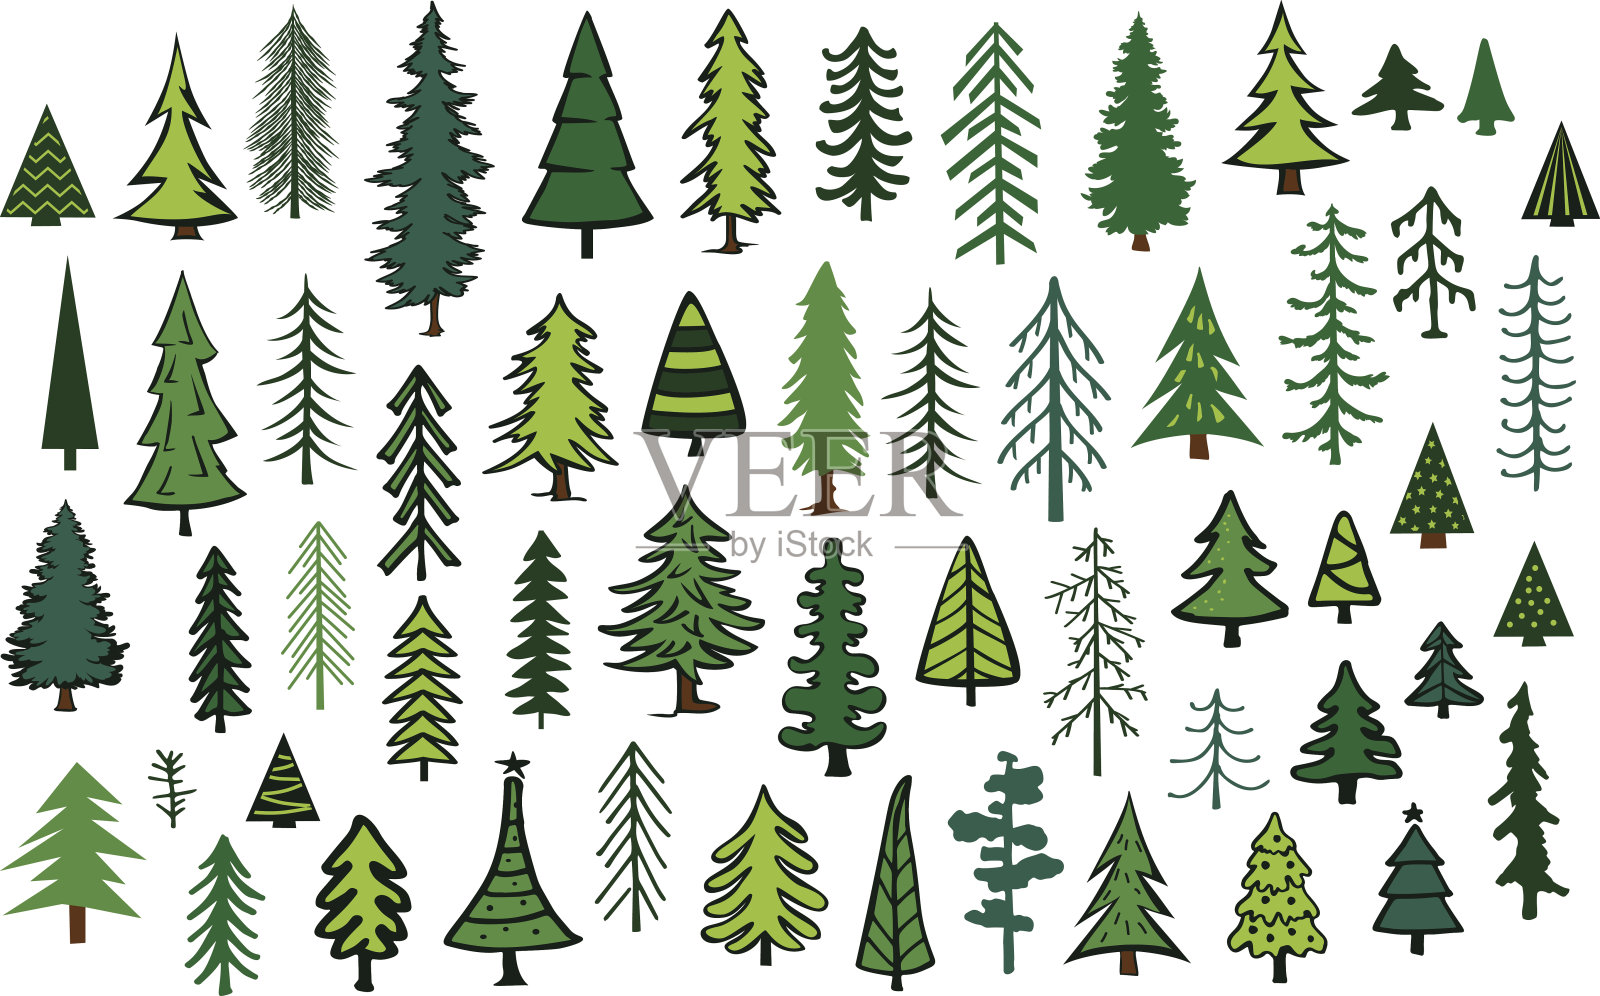 可爱抽象针叶树常绿松树冷杉圣诞树收集设计元素图片